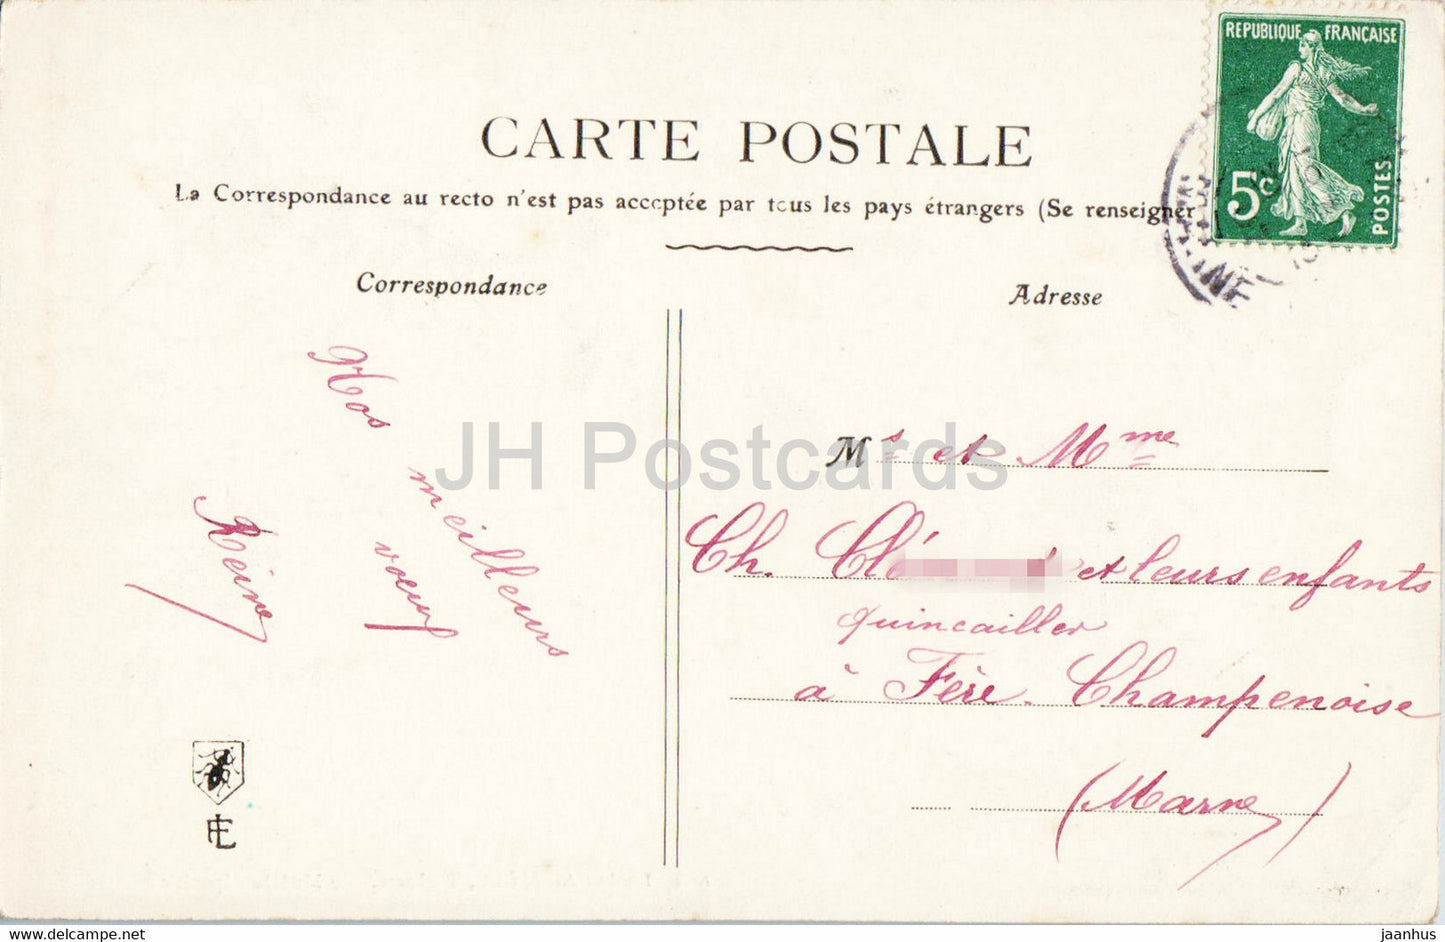 Geburtstagsgrußkarte - Bonne Annee - Illustration - 46 - alte Postkarte - Frankreich - gebraucht